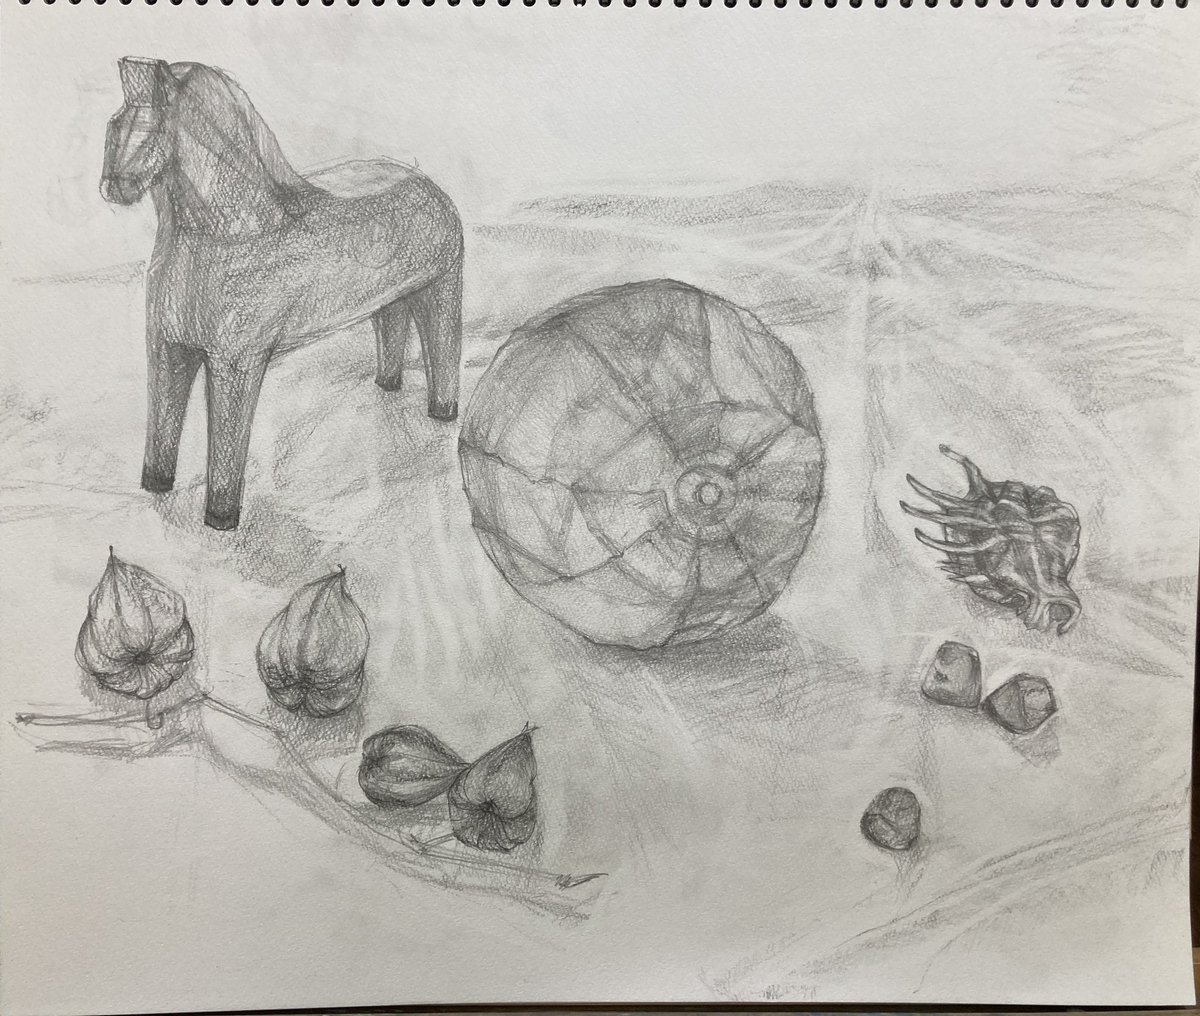 RT @AuTqqq59: #日々描く #デッサン #静物画 #水彩画 紙風船と木彫りの馬、鬼灯、貝殻、ガラスの置物。なんとか完成。本日も余裕なくギリギリ。モチーフに気に入ったもの選んだけど構成に悩んで時間がかかった。課題だな…。